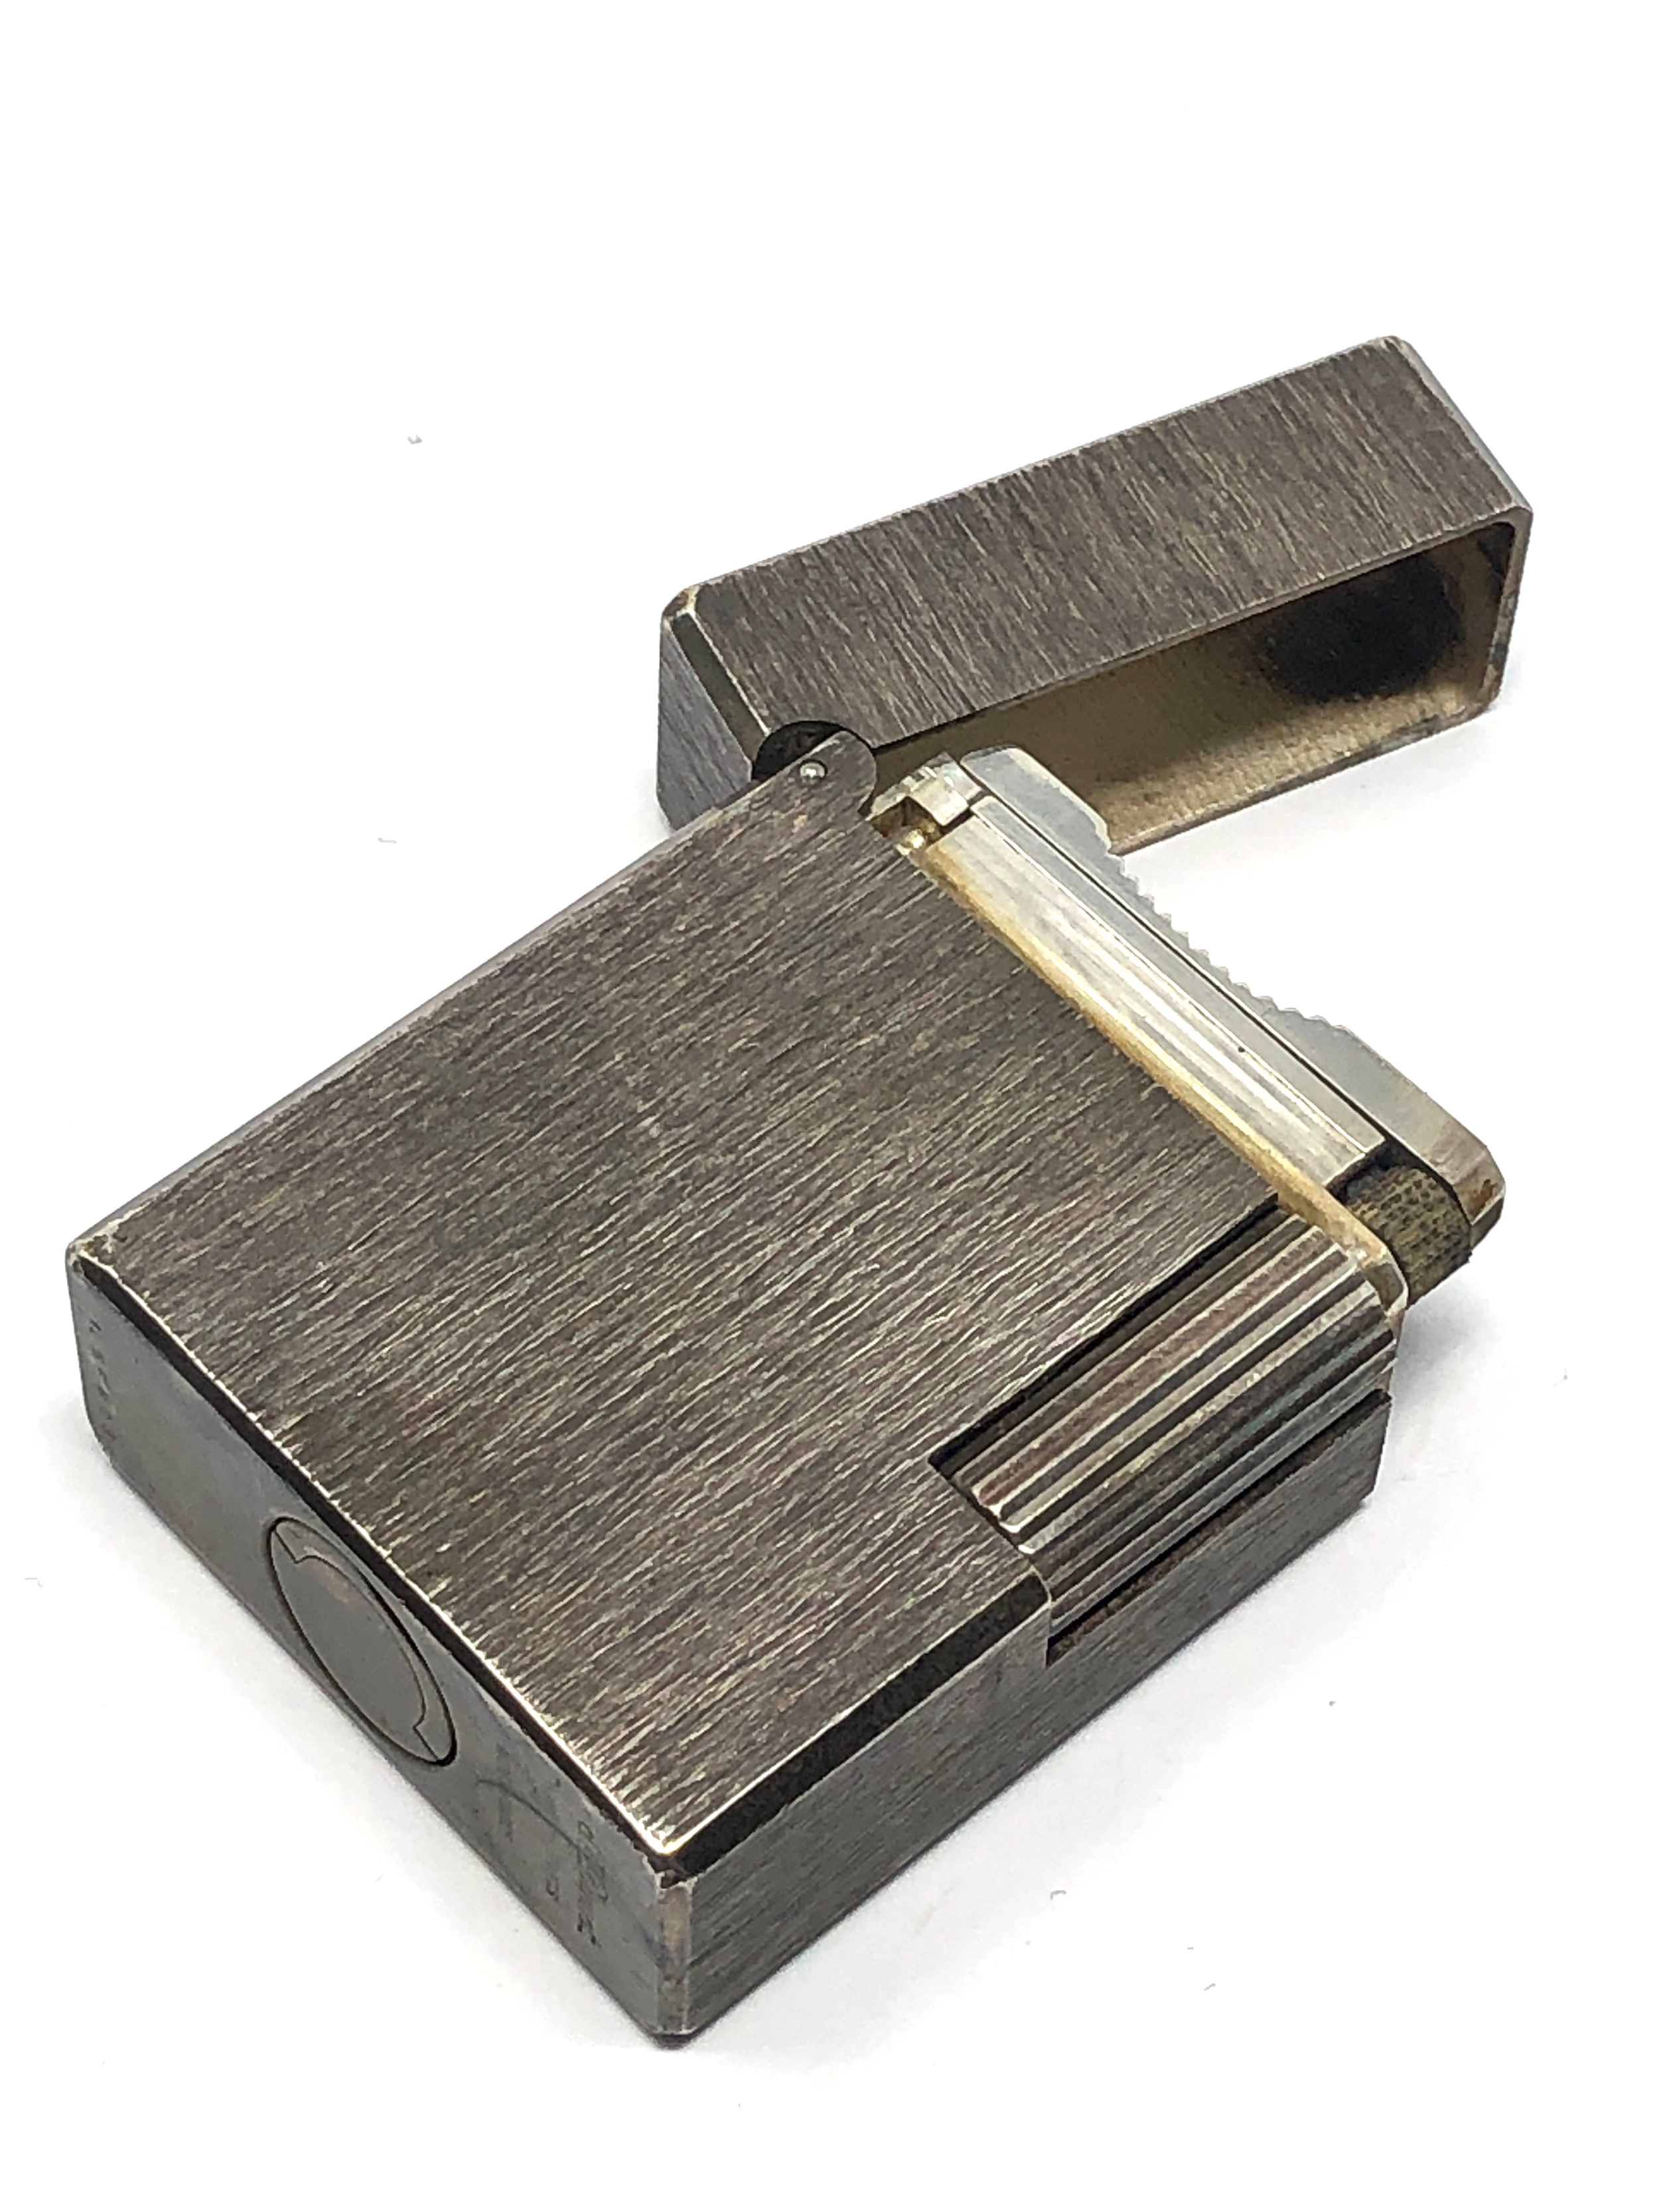 Vintage Dupont cigarette lighter - Image 2 of 5